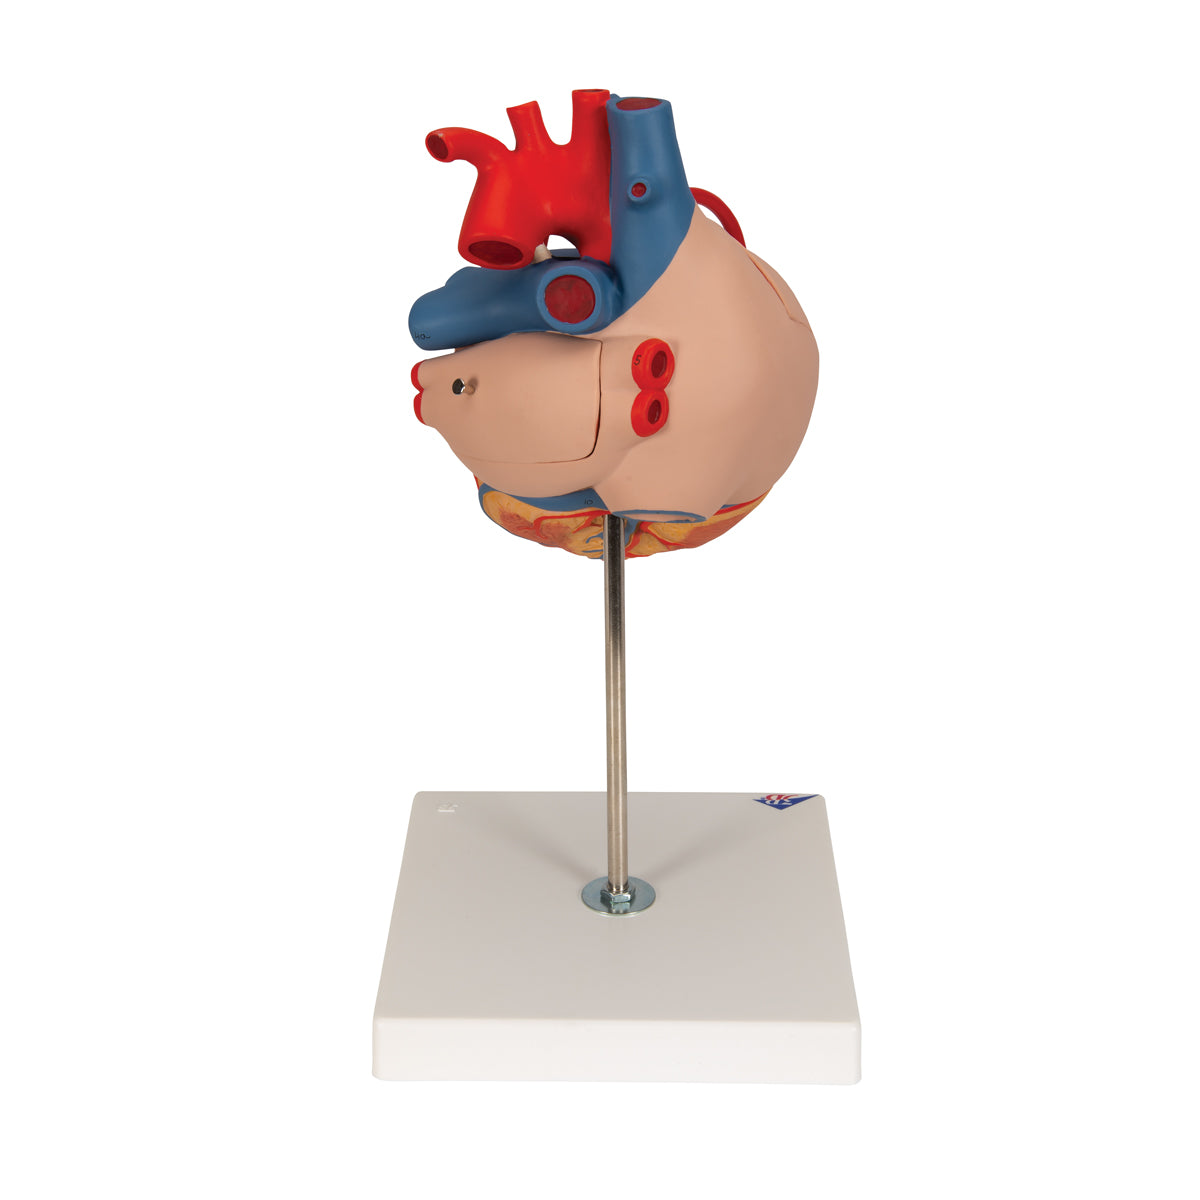 Förstorad hjärtmodell som visar resultatet efter bypassoperation